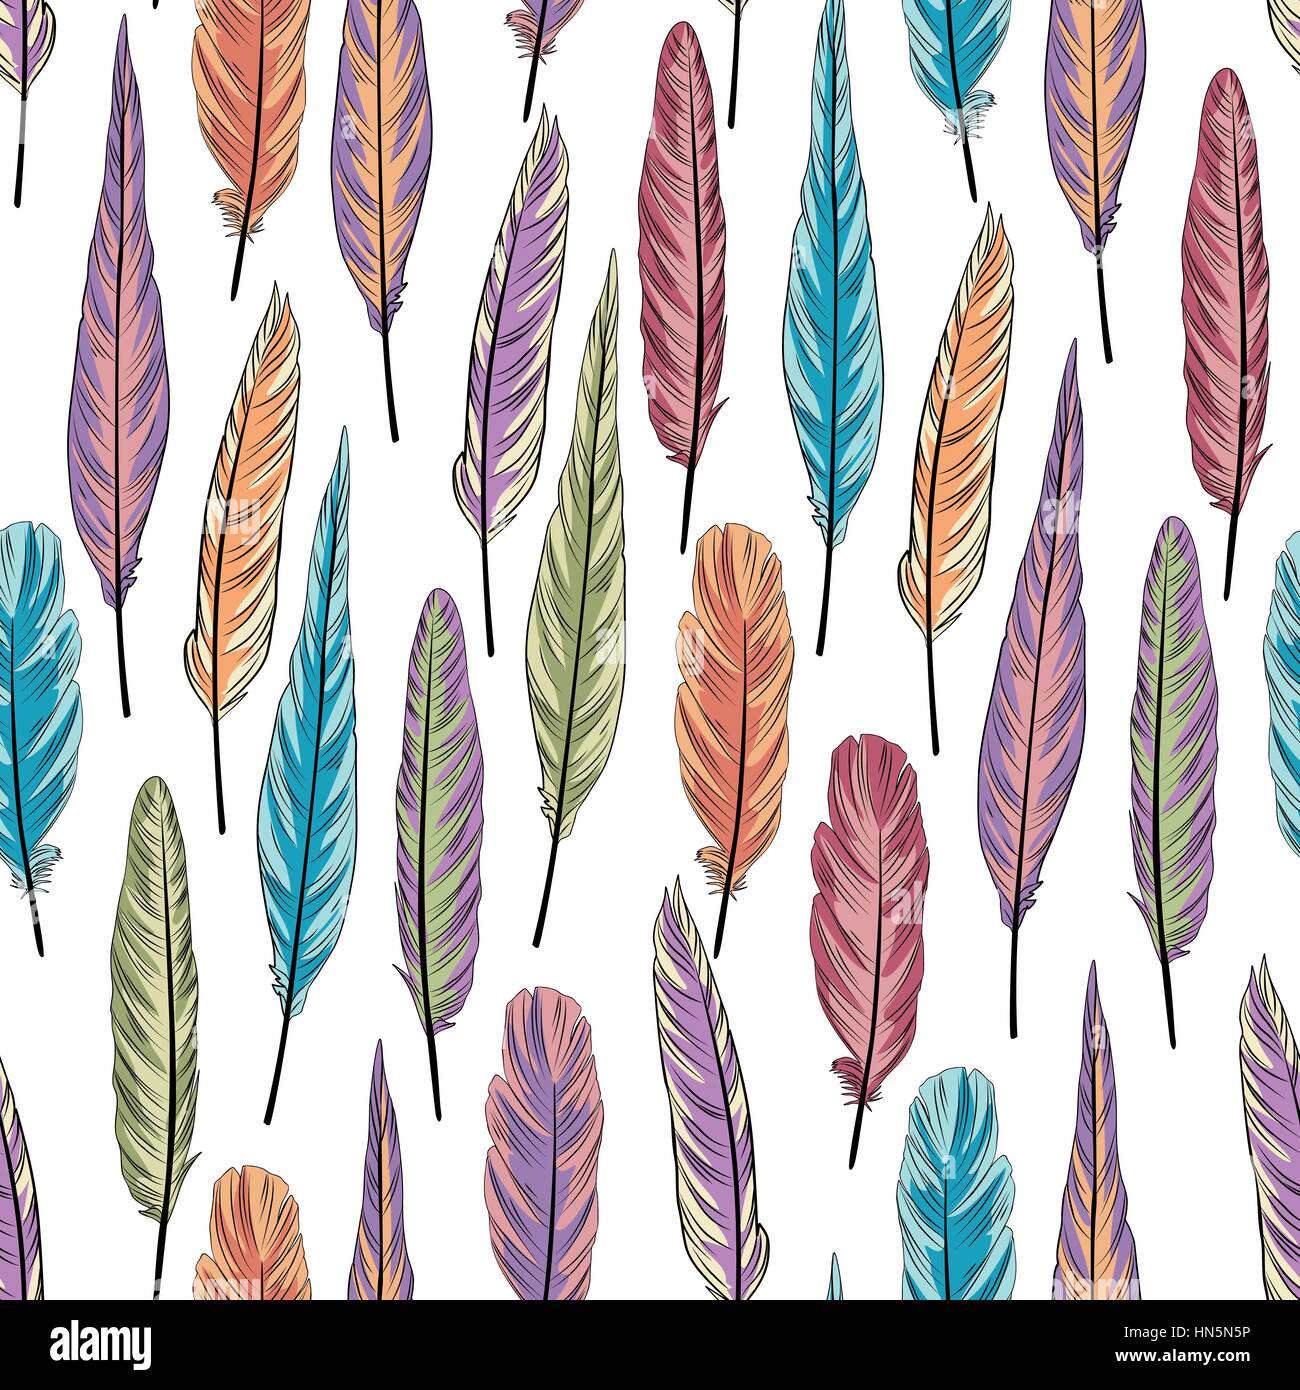 Feder nahtlose Muster. Farbenfrohe Vector Illustration von Federn auf weißem Hintergrund Stock Vektor